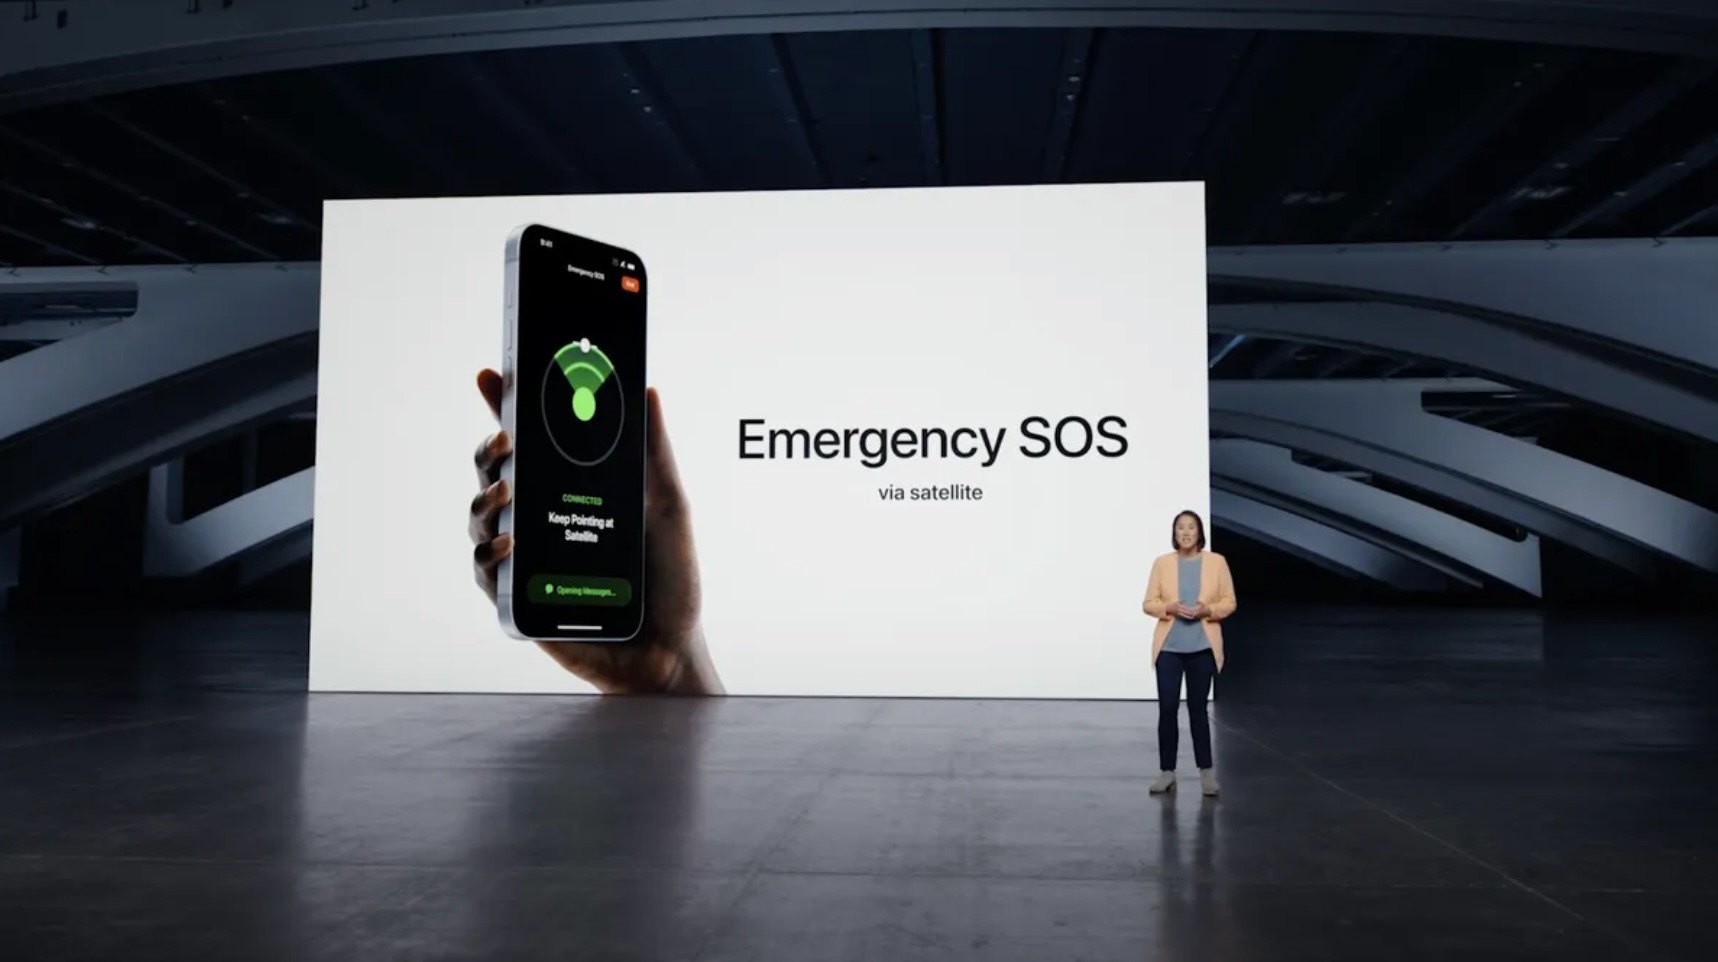 Tính năng nhắn tin SOS qua vệ tinh được giới thiệu cùng iPhone 14 vào tháng 9 nhưng mới chỉ bắt đầu hoạt động từ giữa tháng 11 năm nay. Ảnh: Apple